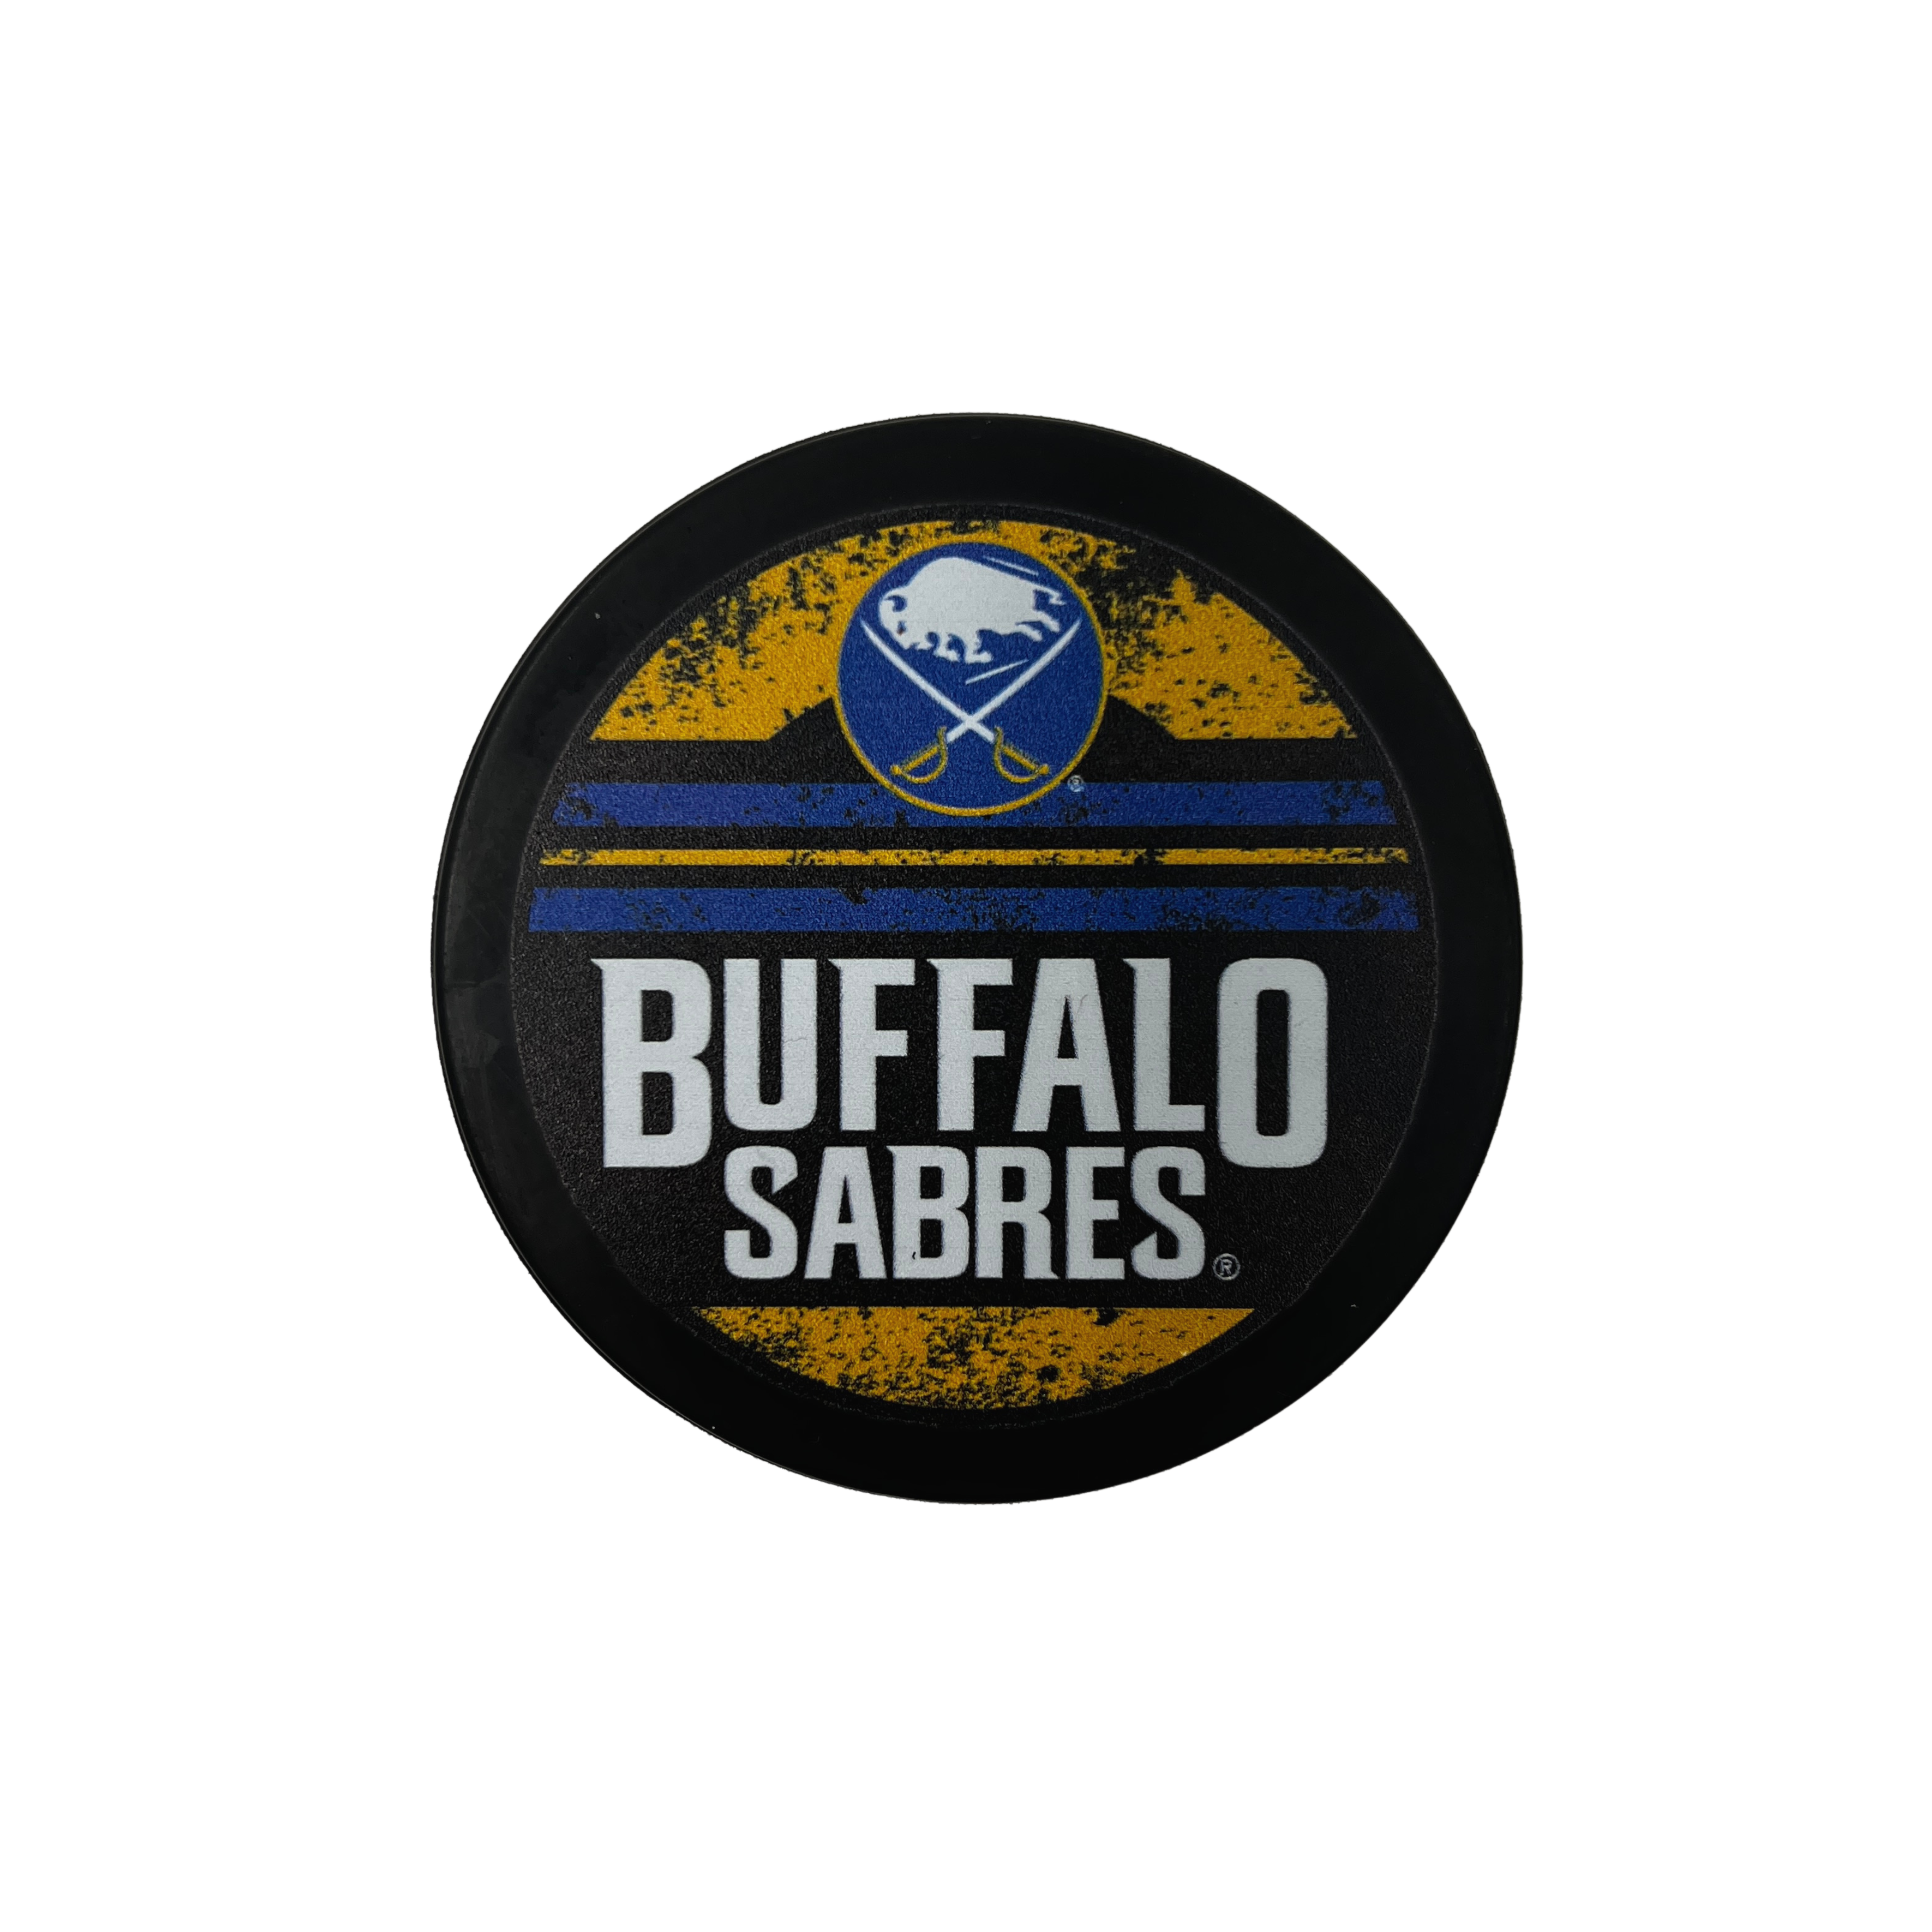 Buffalo Sabres — TSE Buffalo